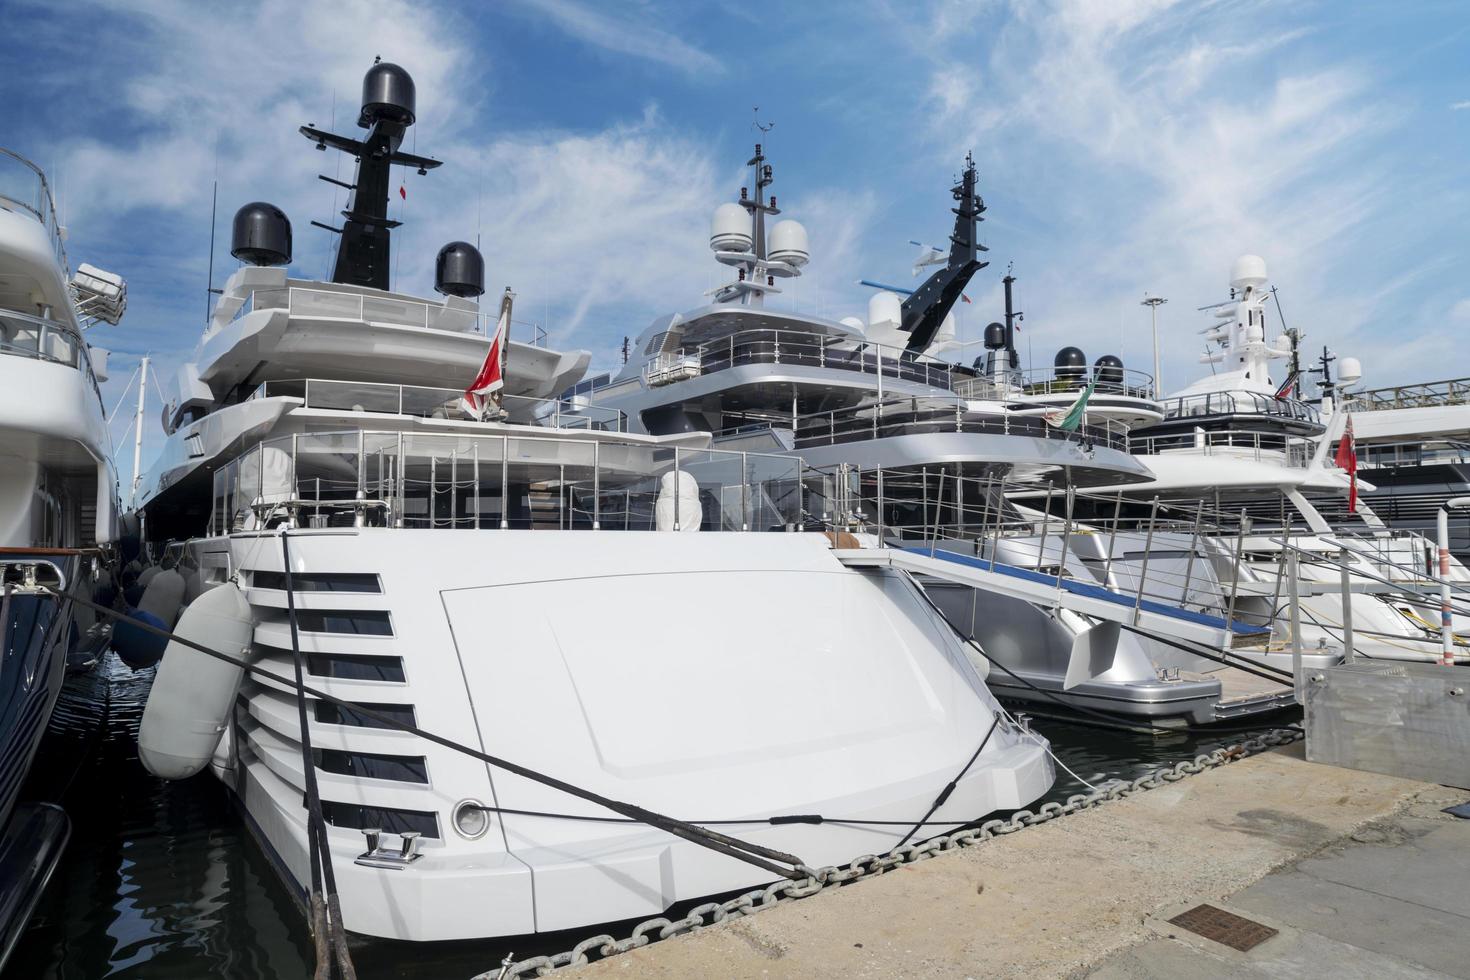 Luxury yachts anchored in a marina Viareggio Lucca Italy 13 february 2022 photo